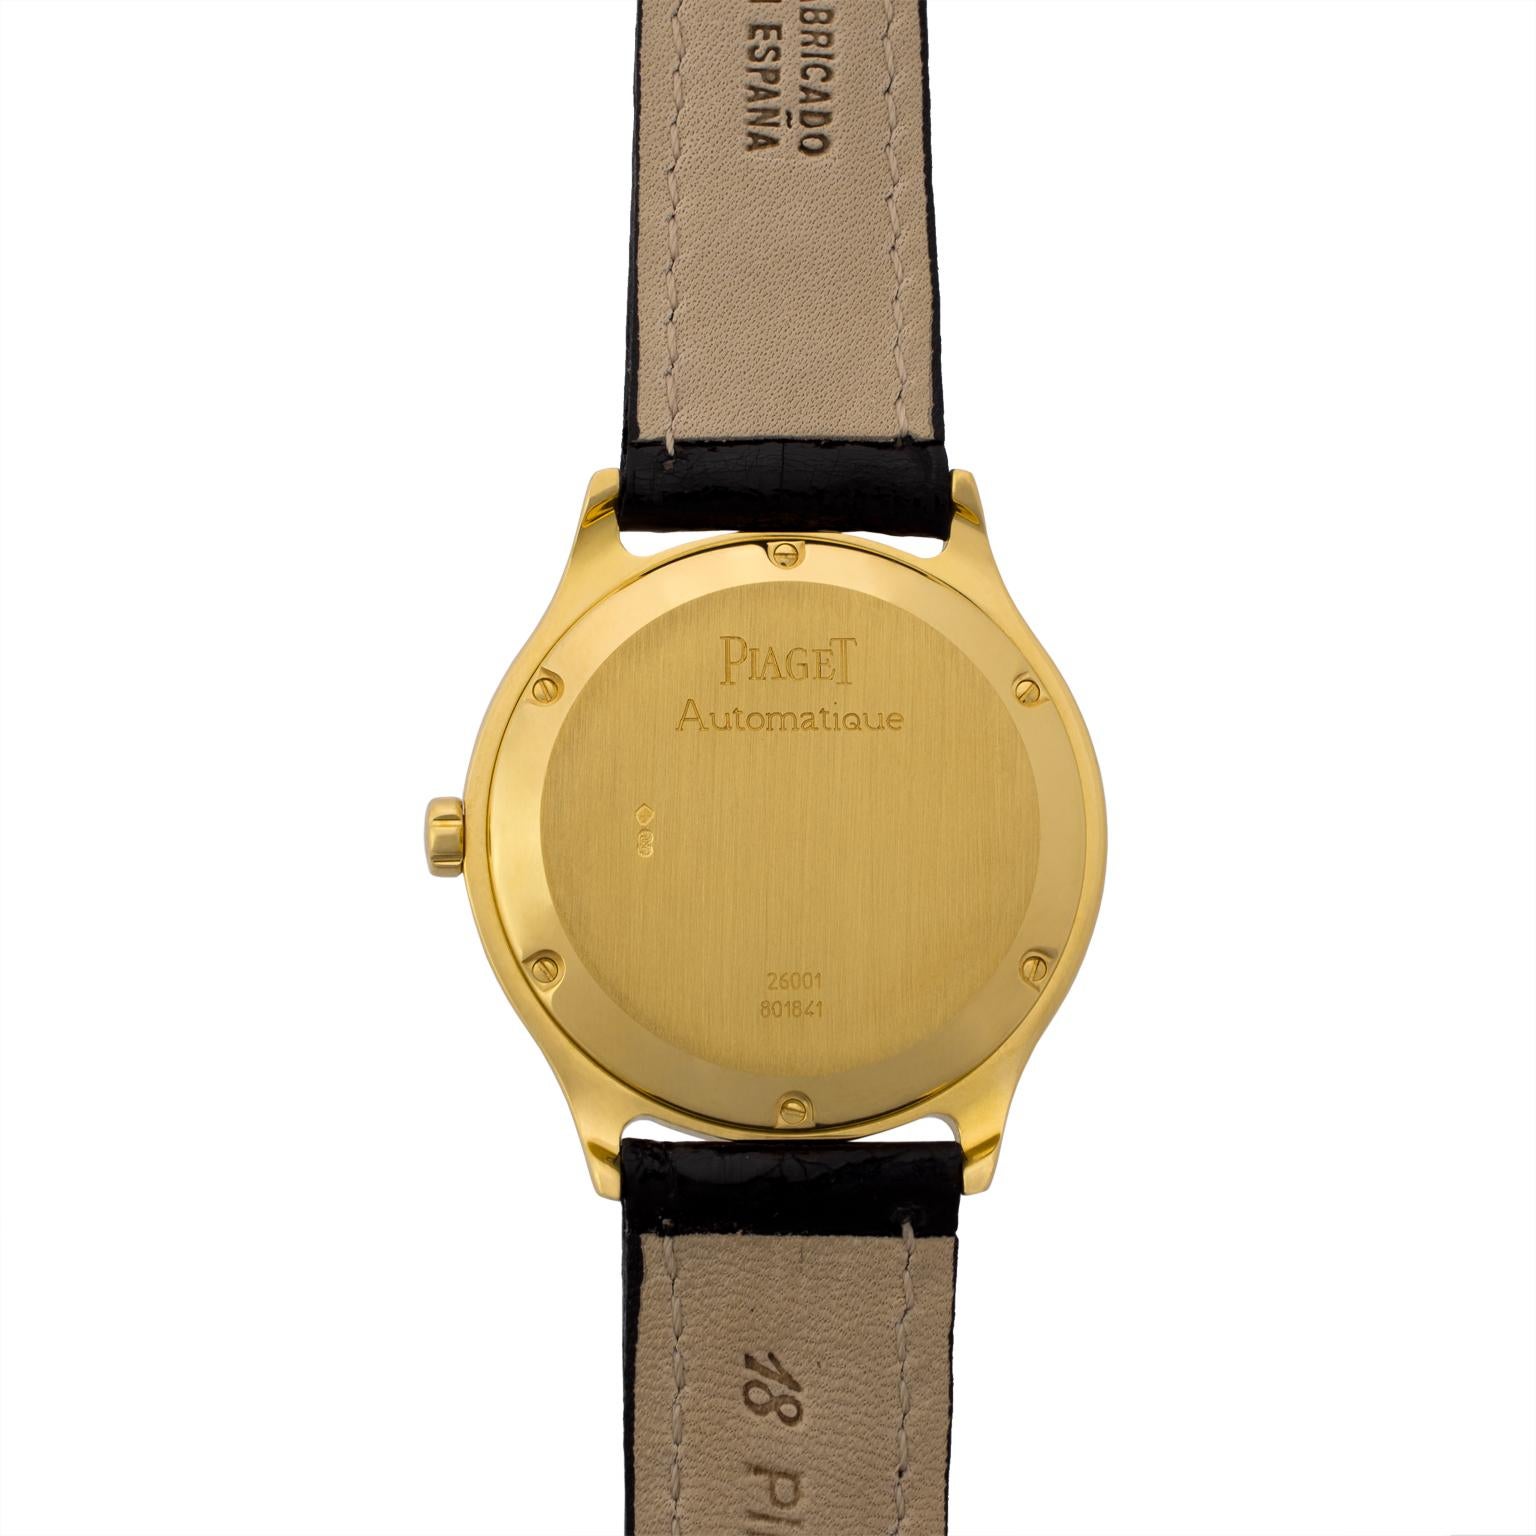 Piaget Citea Automatic Gold Wristwatch 1